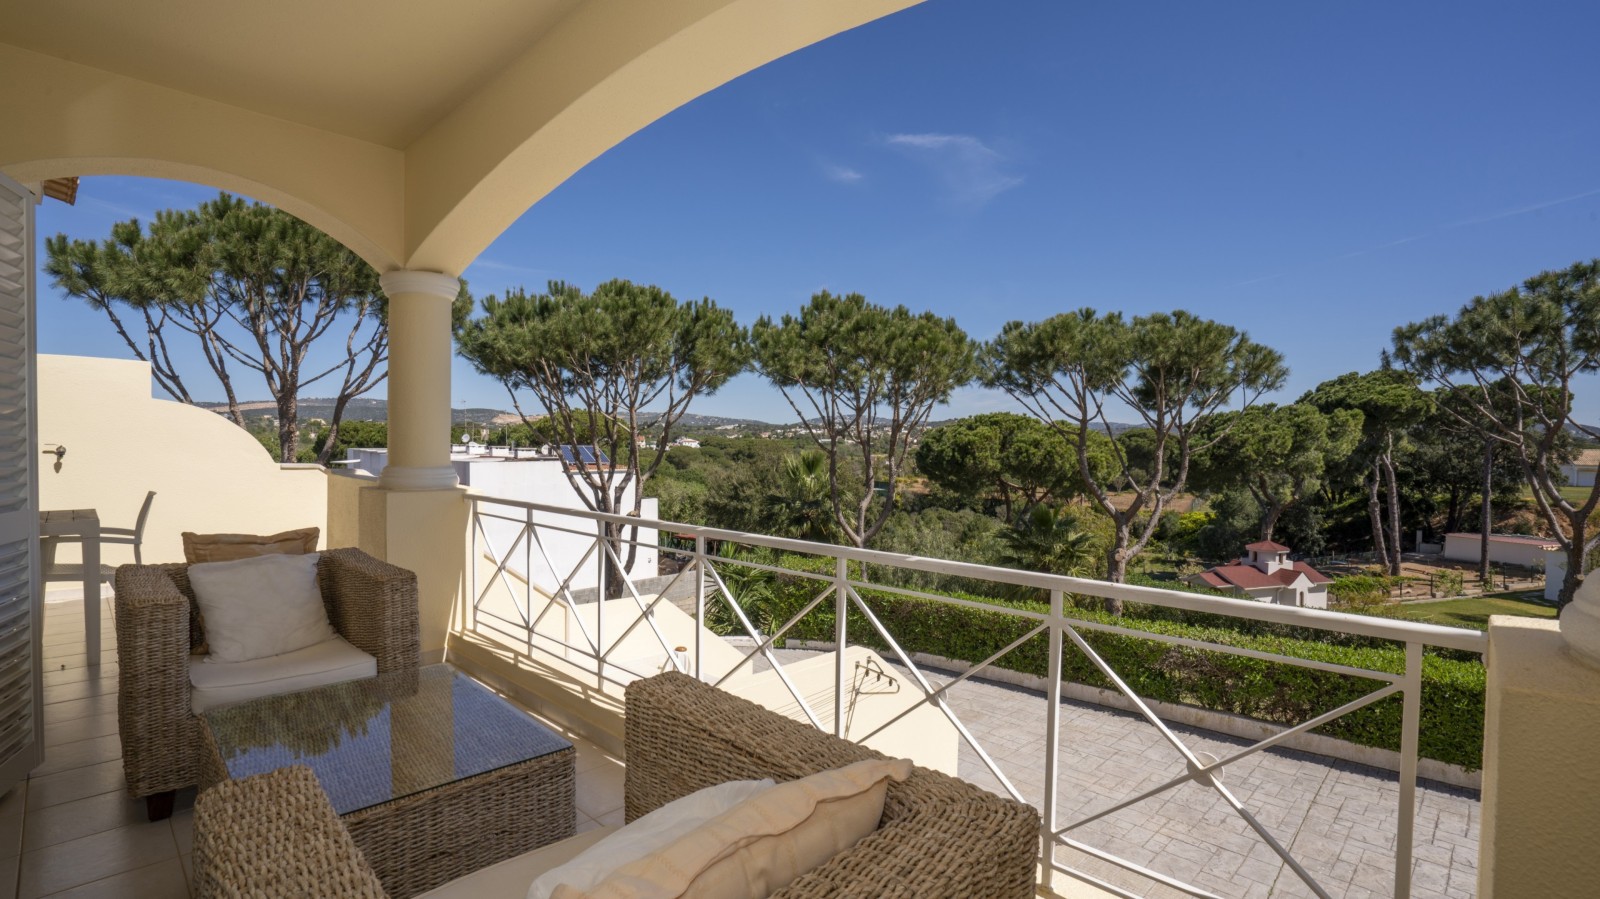 Villa adosada de 4 dormitorios, con piscina, en venta en Vilamoura, Algarve_237502